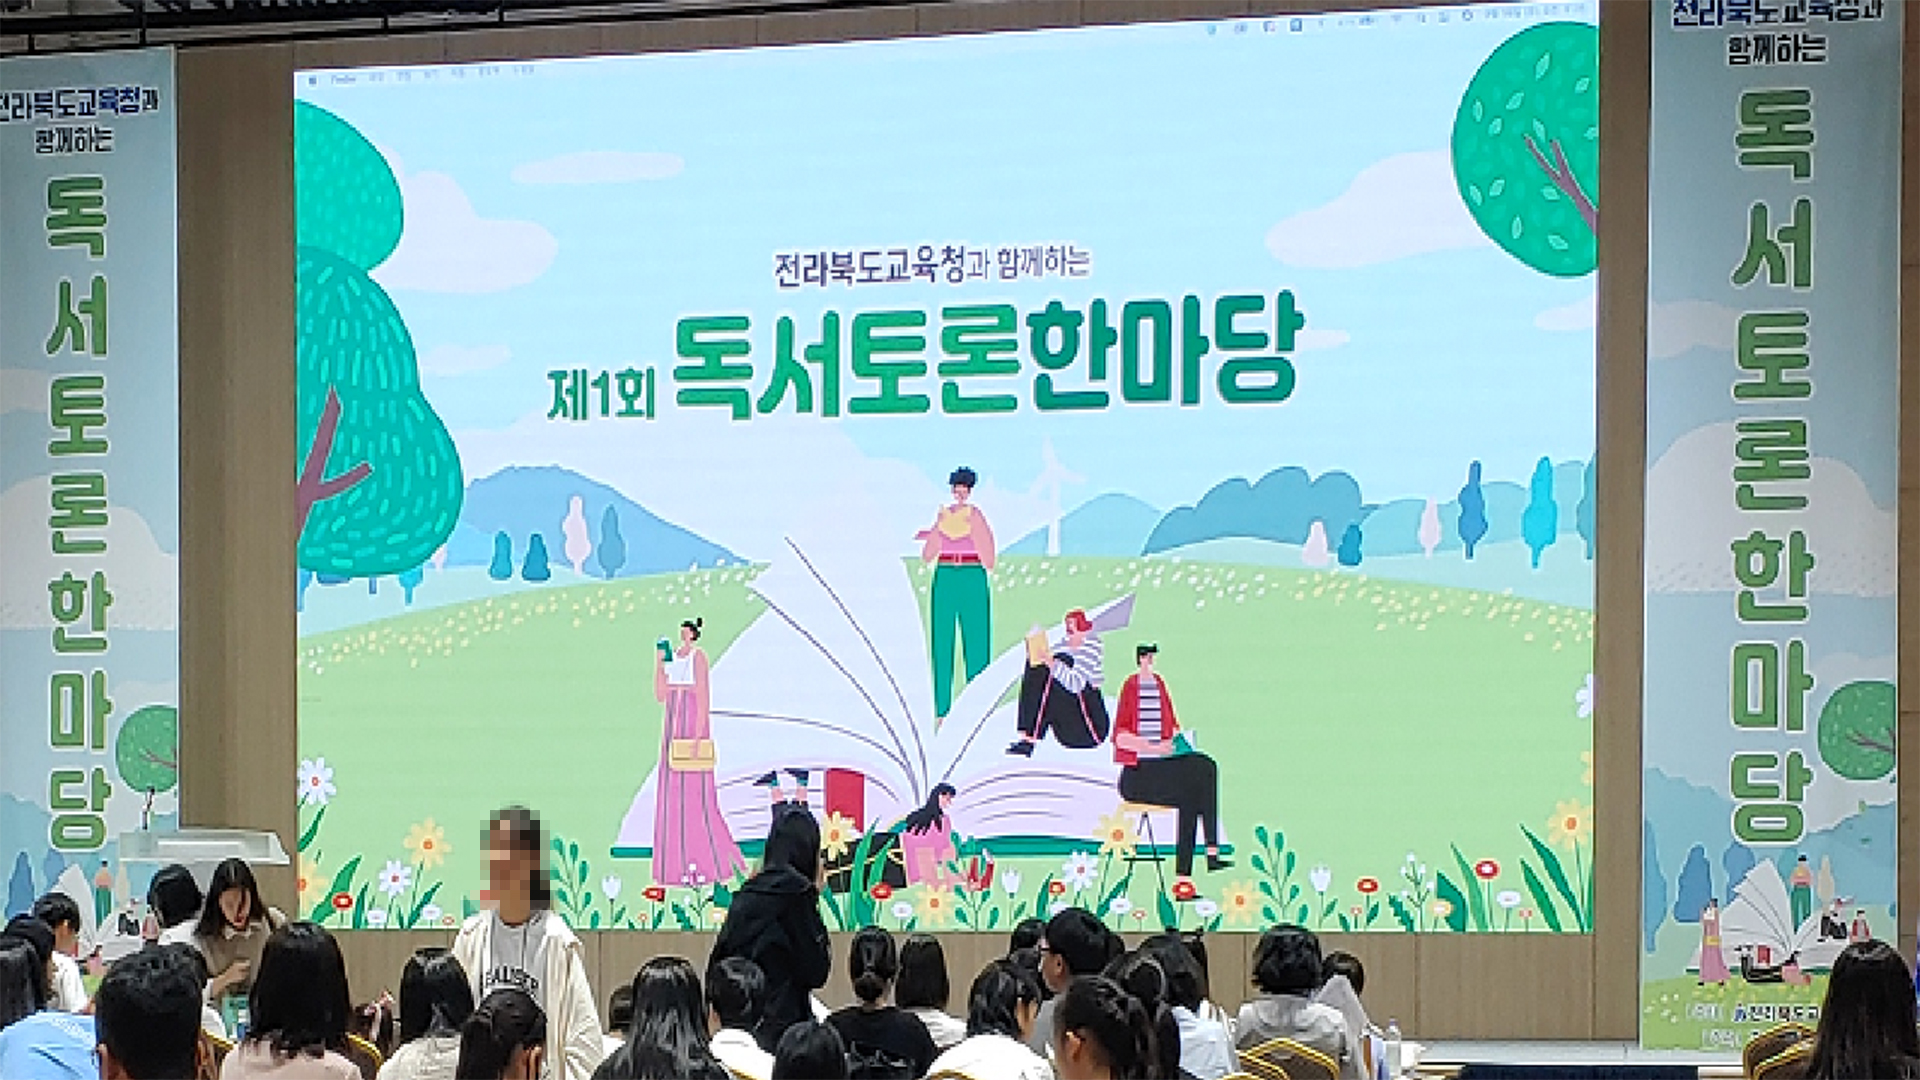 '독서토론한마당' 결승전 이번주 토요일 열려 -전주MBC 공개홀-